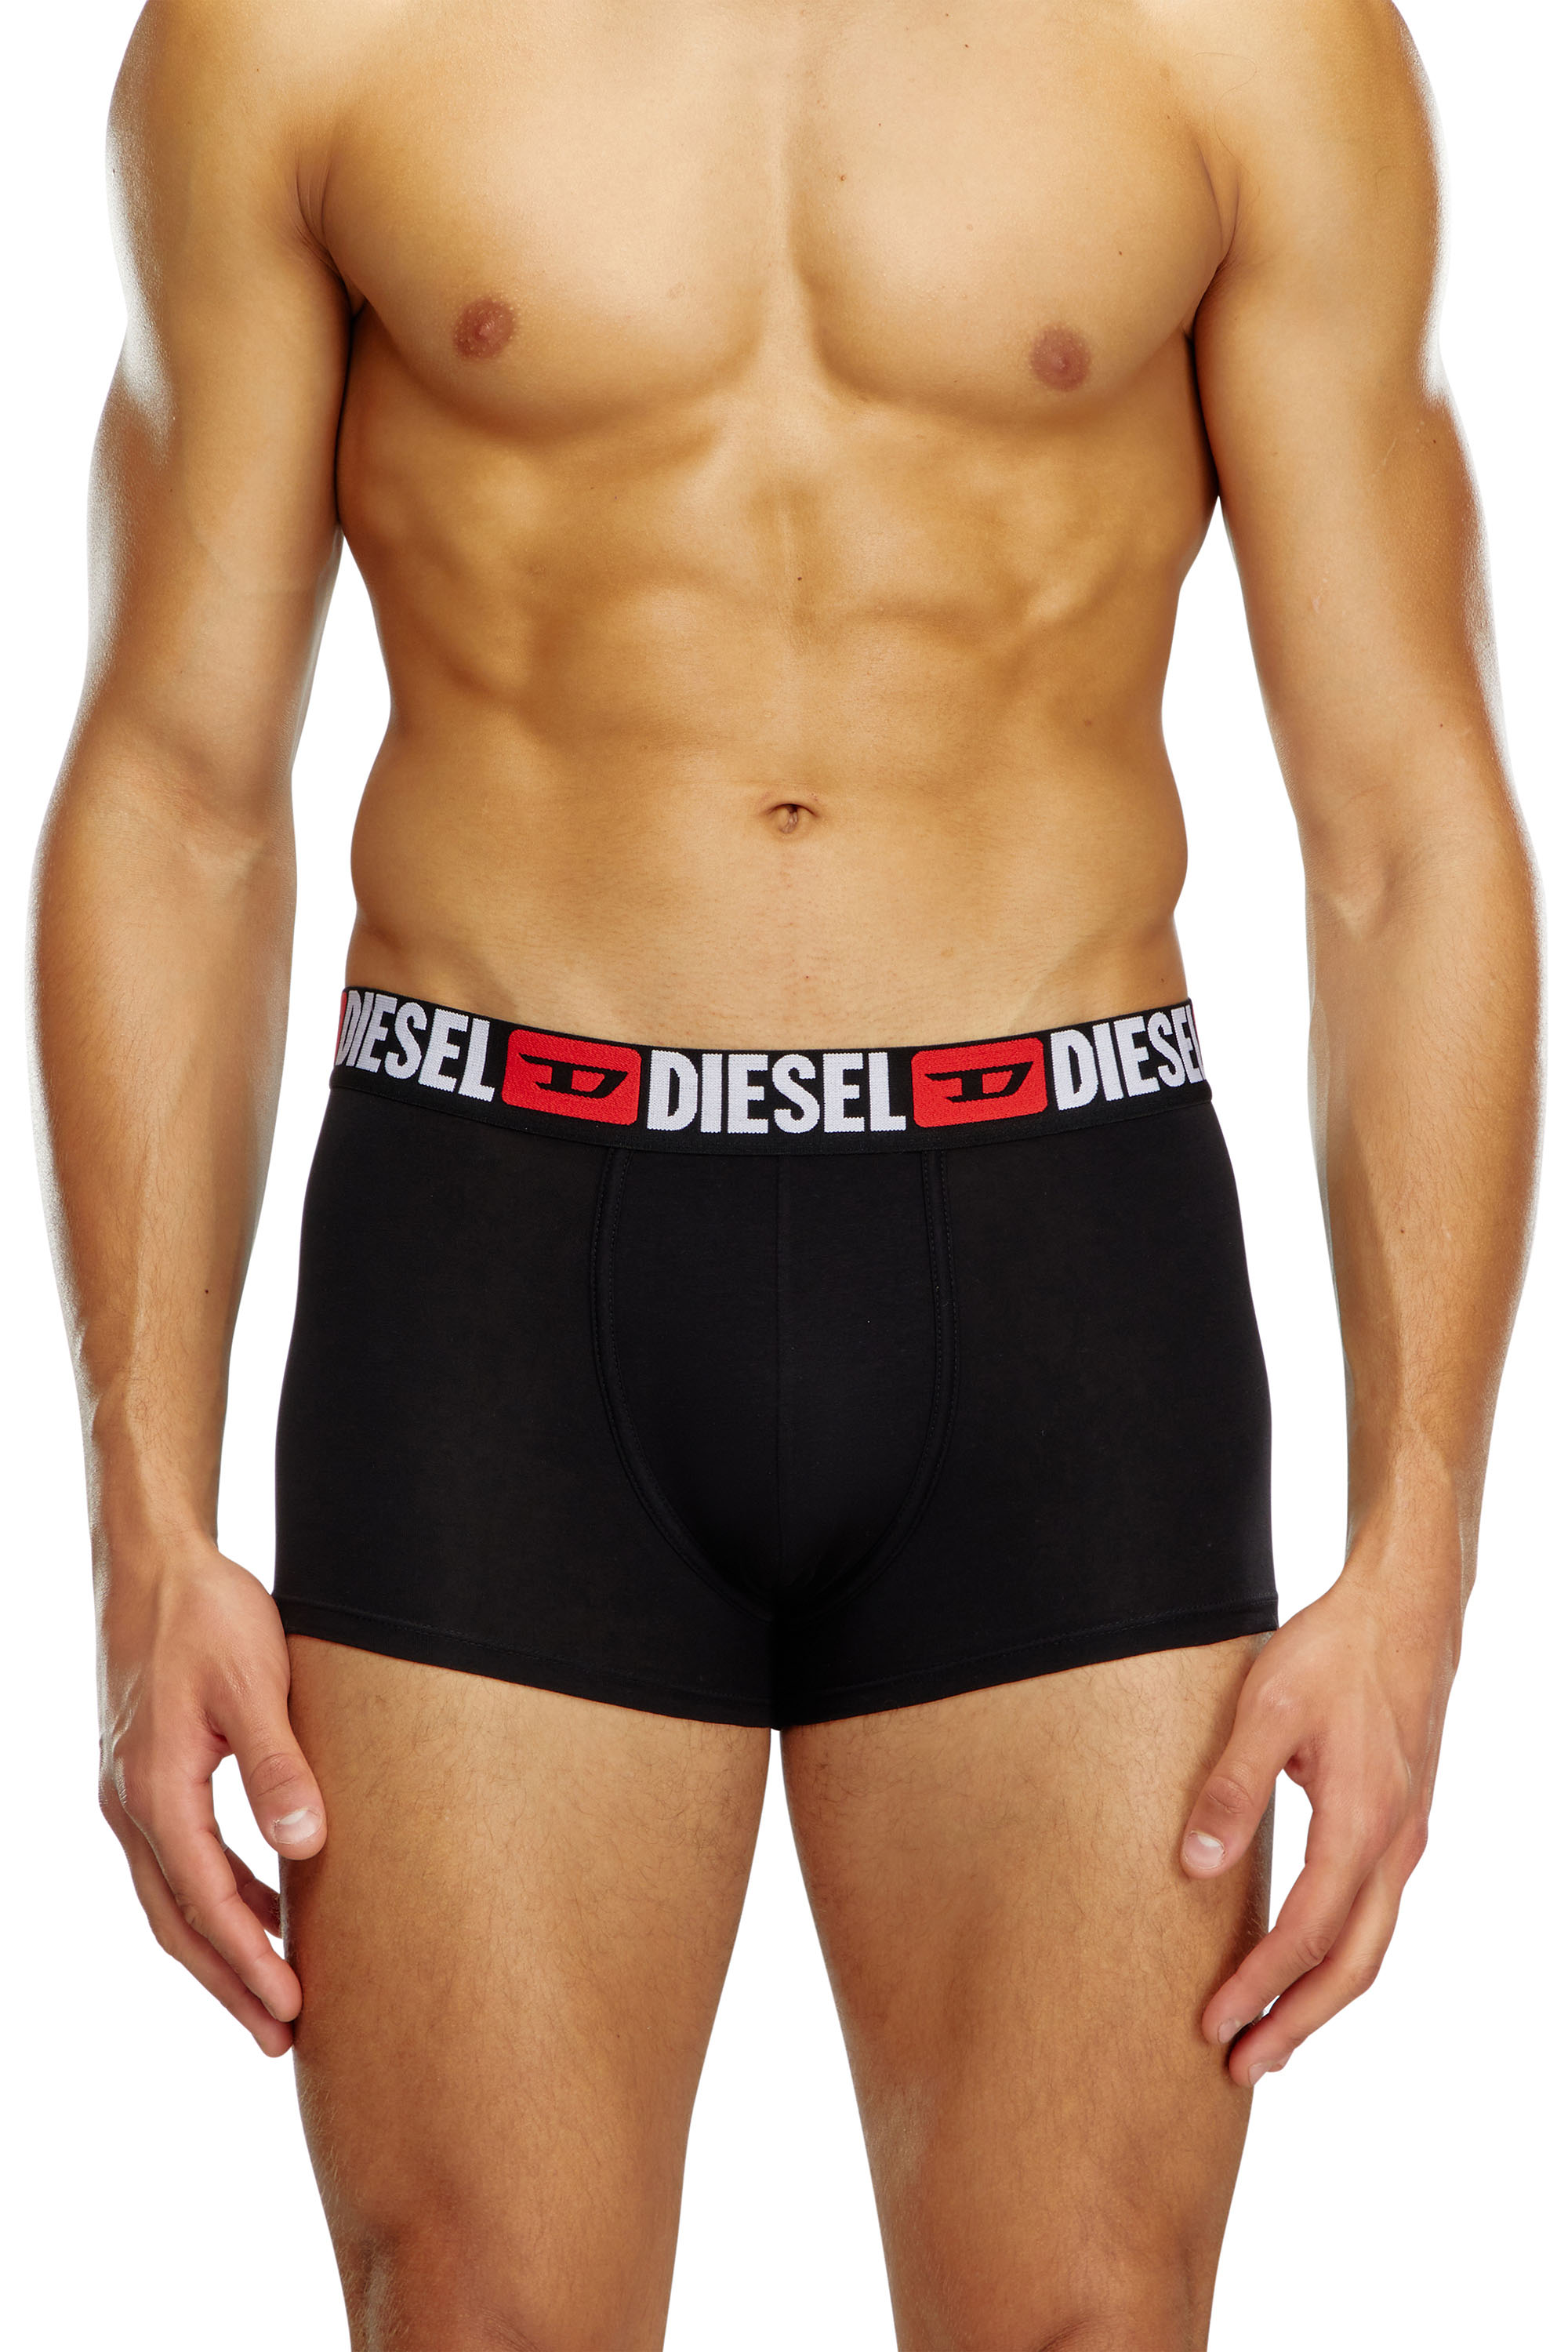 Diesel - Lot de trois boxers avec taille ornée du logo sur toute la surface - Boxeurs courts - Homme - Noir